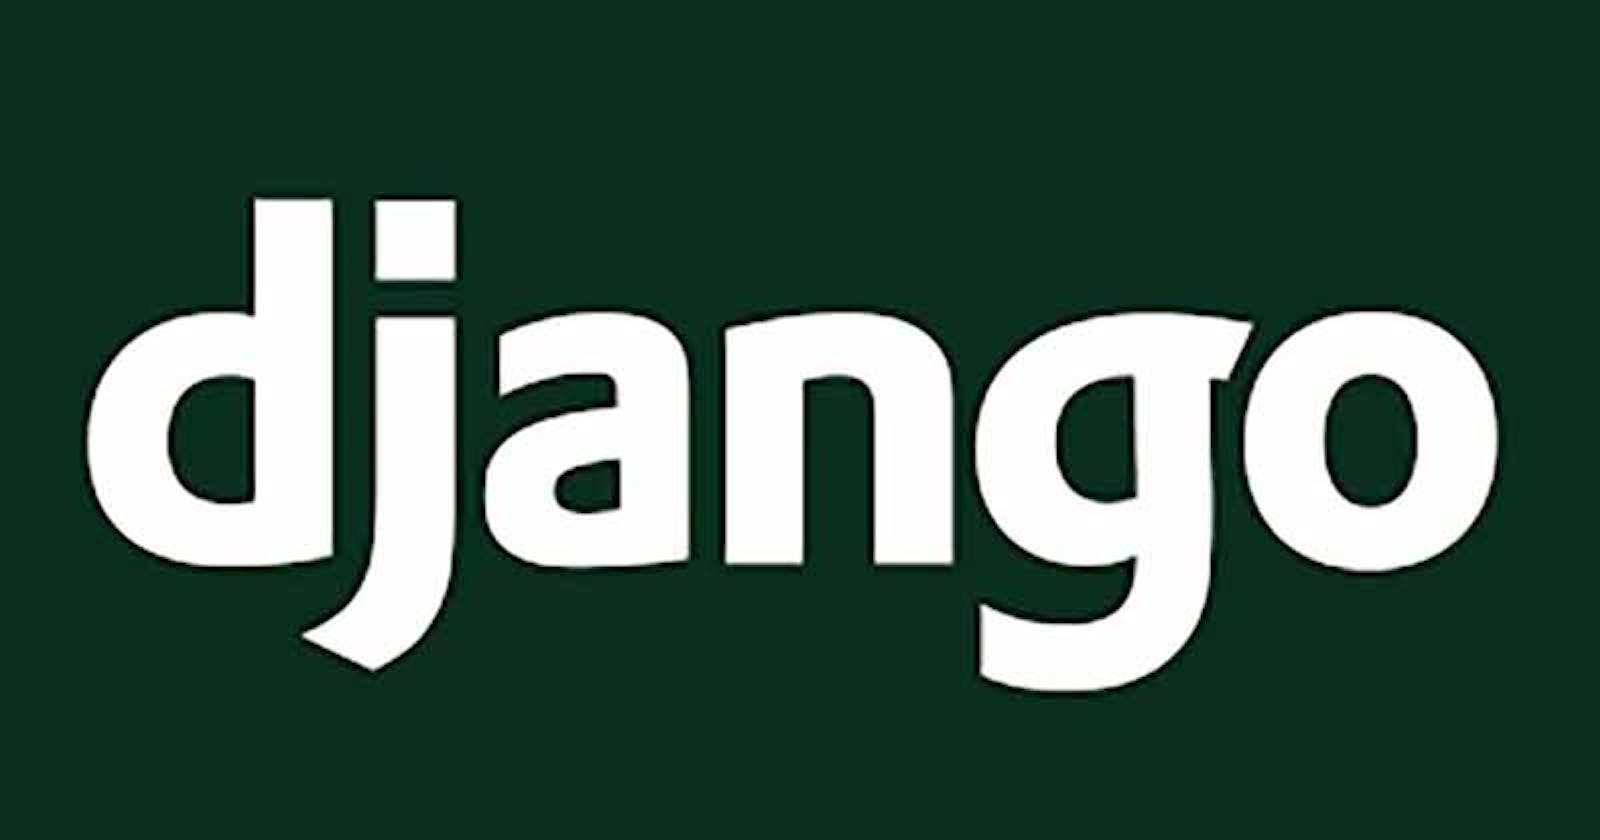 Managing the UI in Django